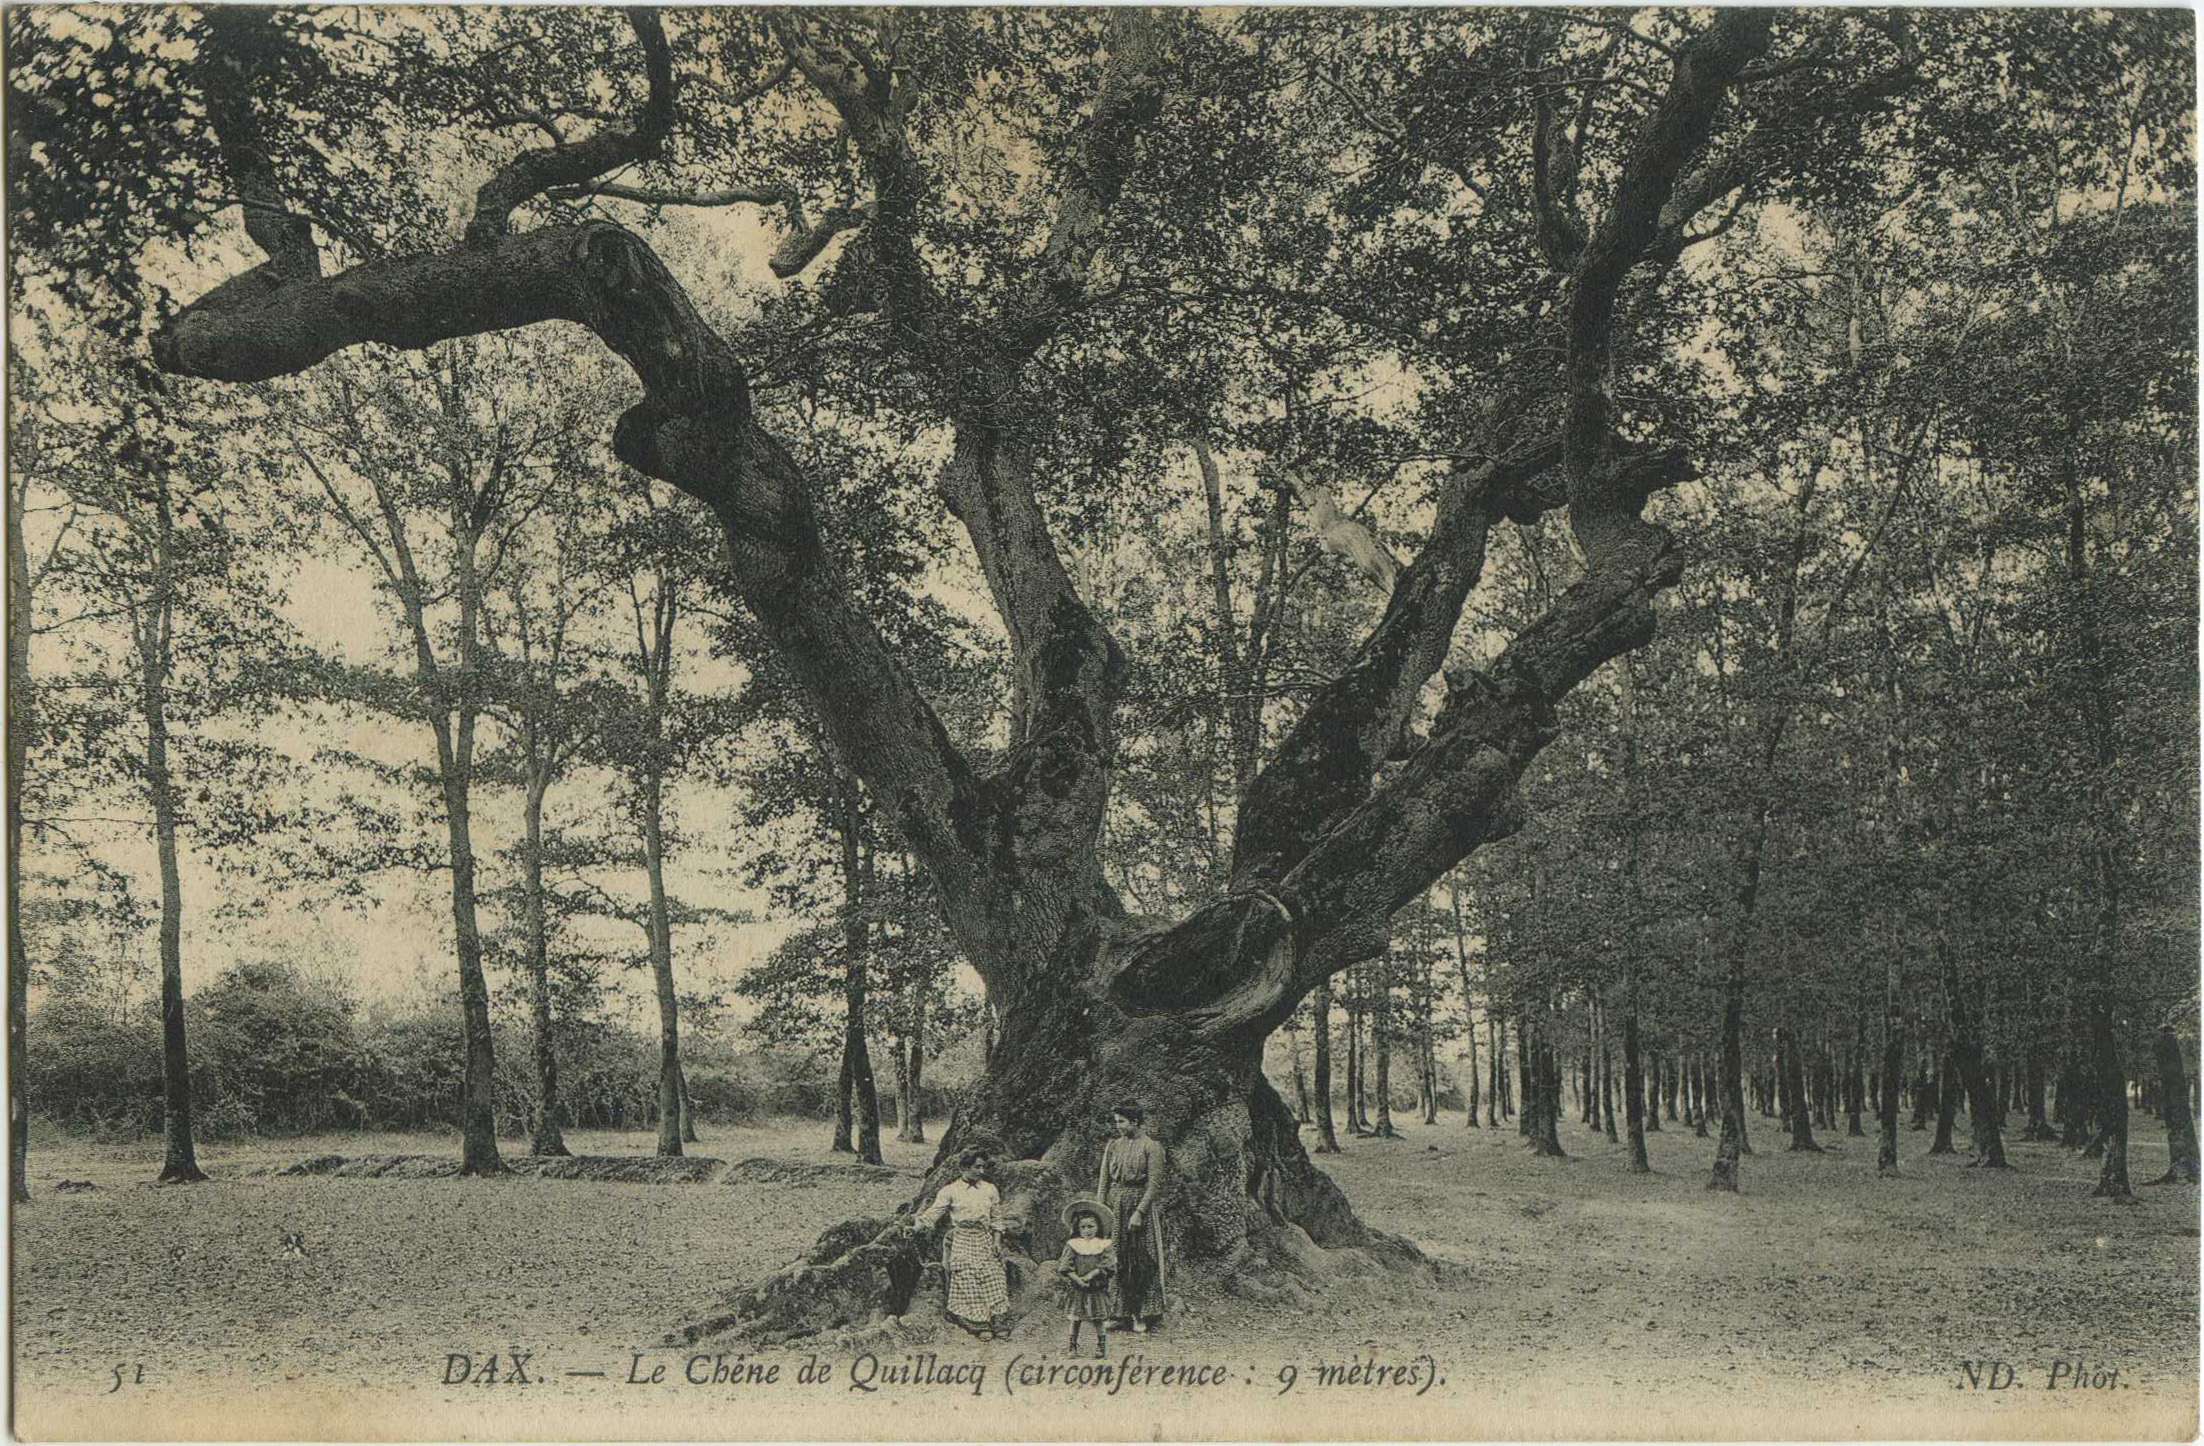 Dax - Le Chêne de Quillacq (circonférence : 9 mètres).